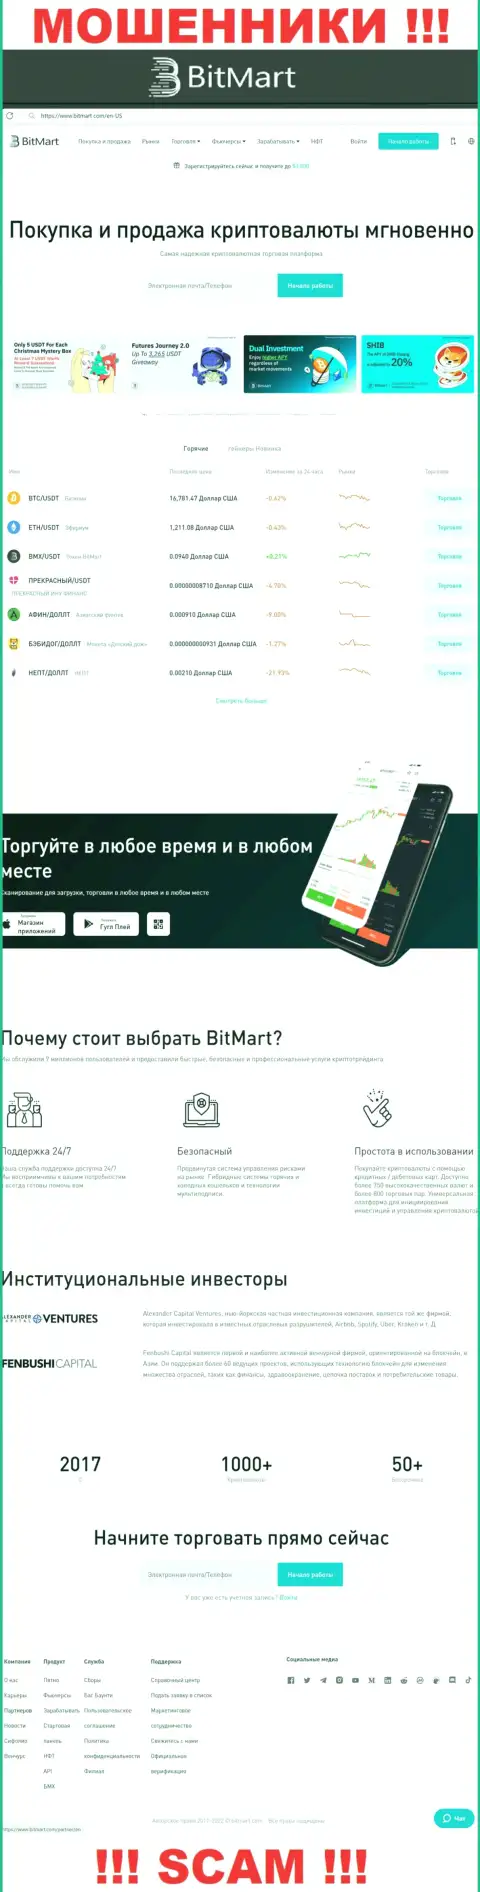 Вид официального портала противоправно действующей организации BitMart